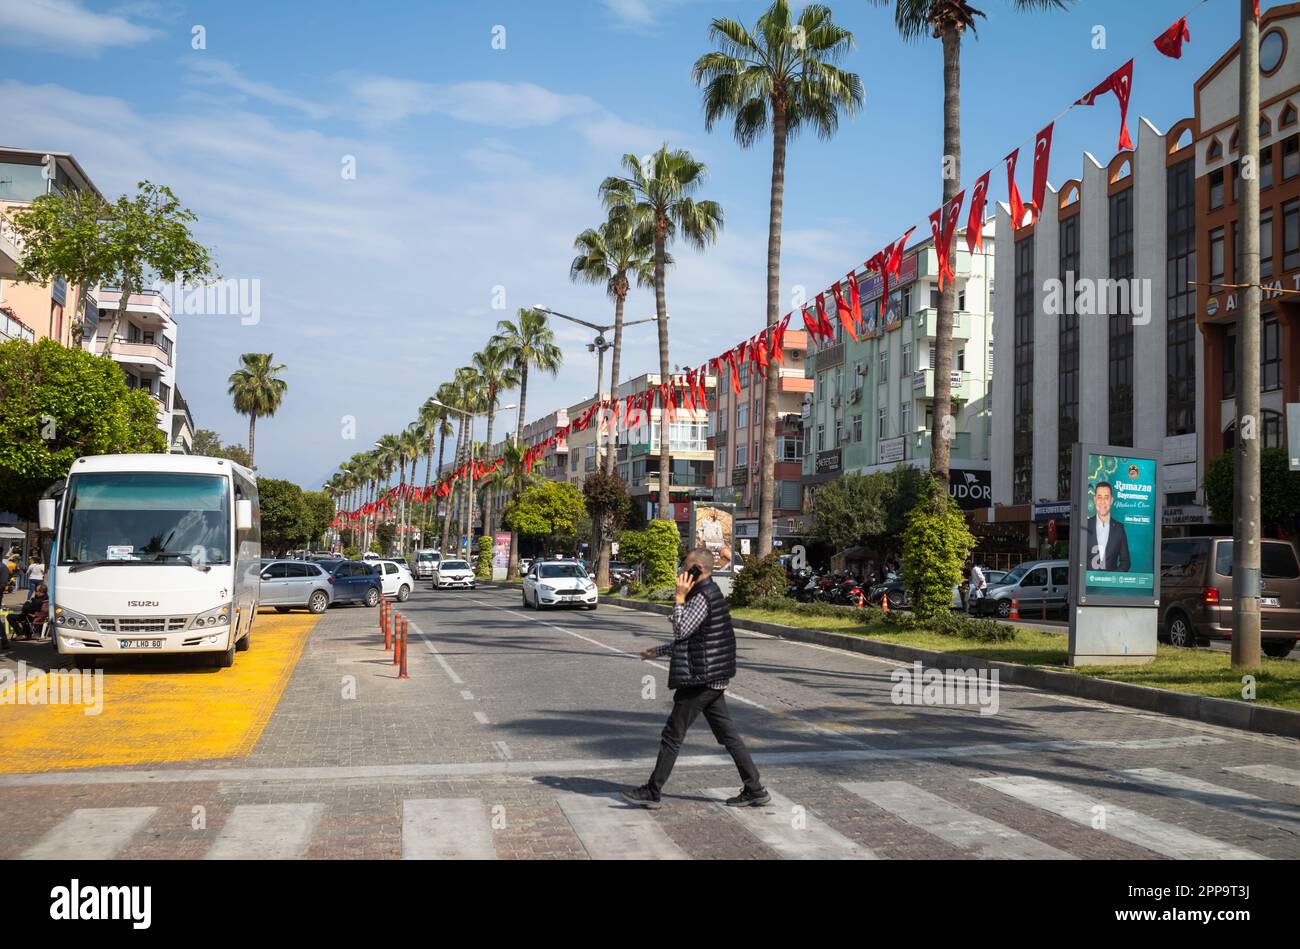 Un homme parlant sur un téléphone portable traverse une route bordée de palmiers et de banderoles avec le drapeau turc à Alanya, dans la province d'Antalya, en Turquie. Banque D'Images